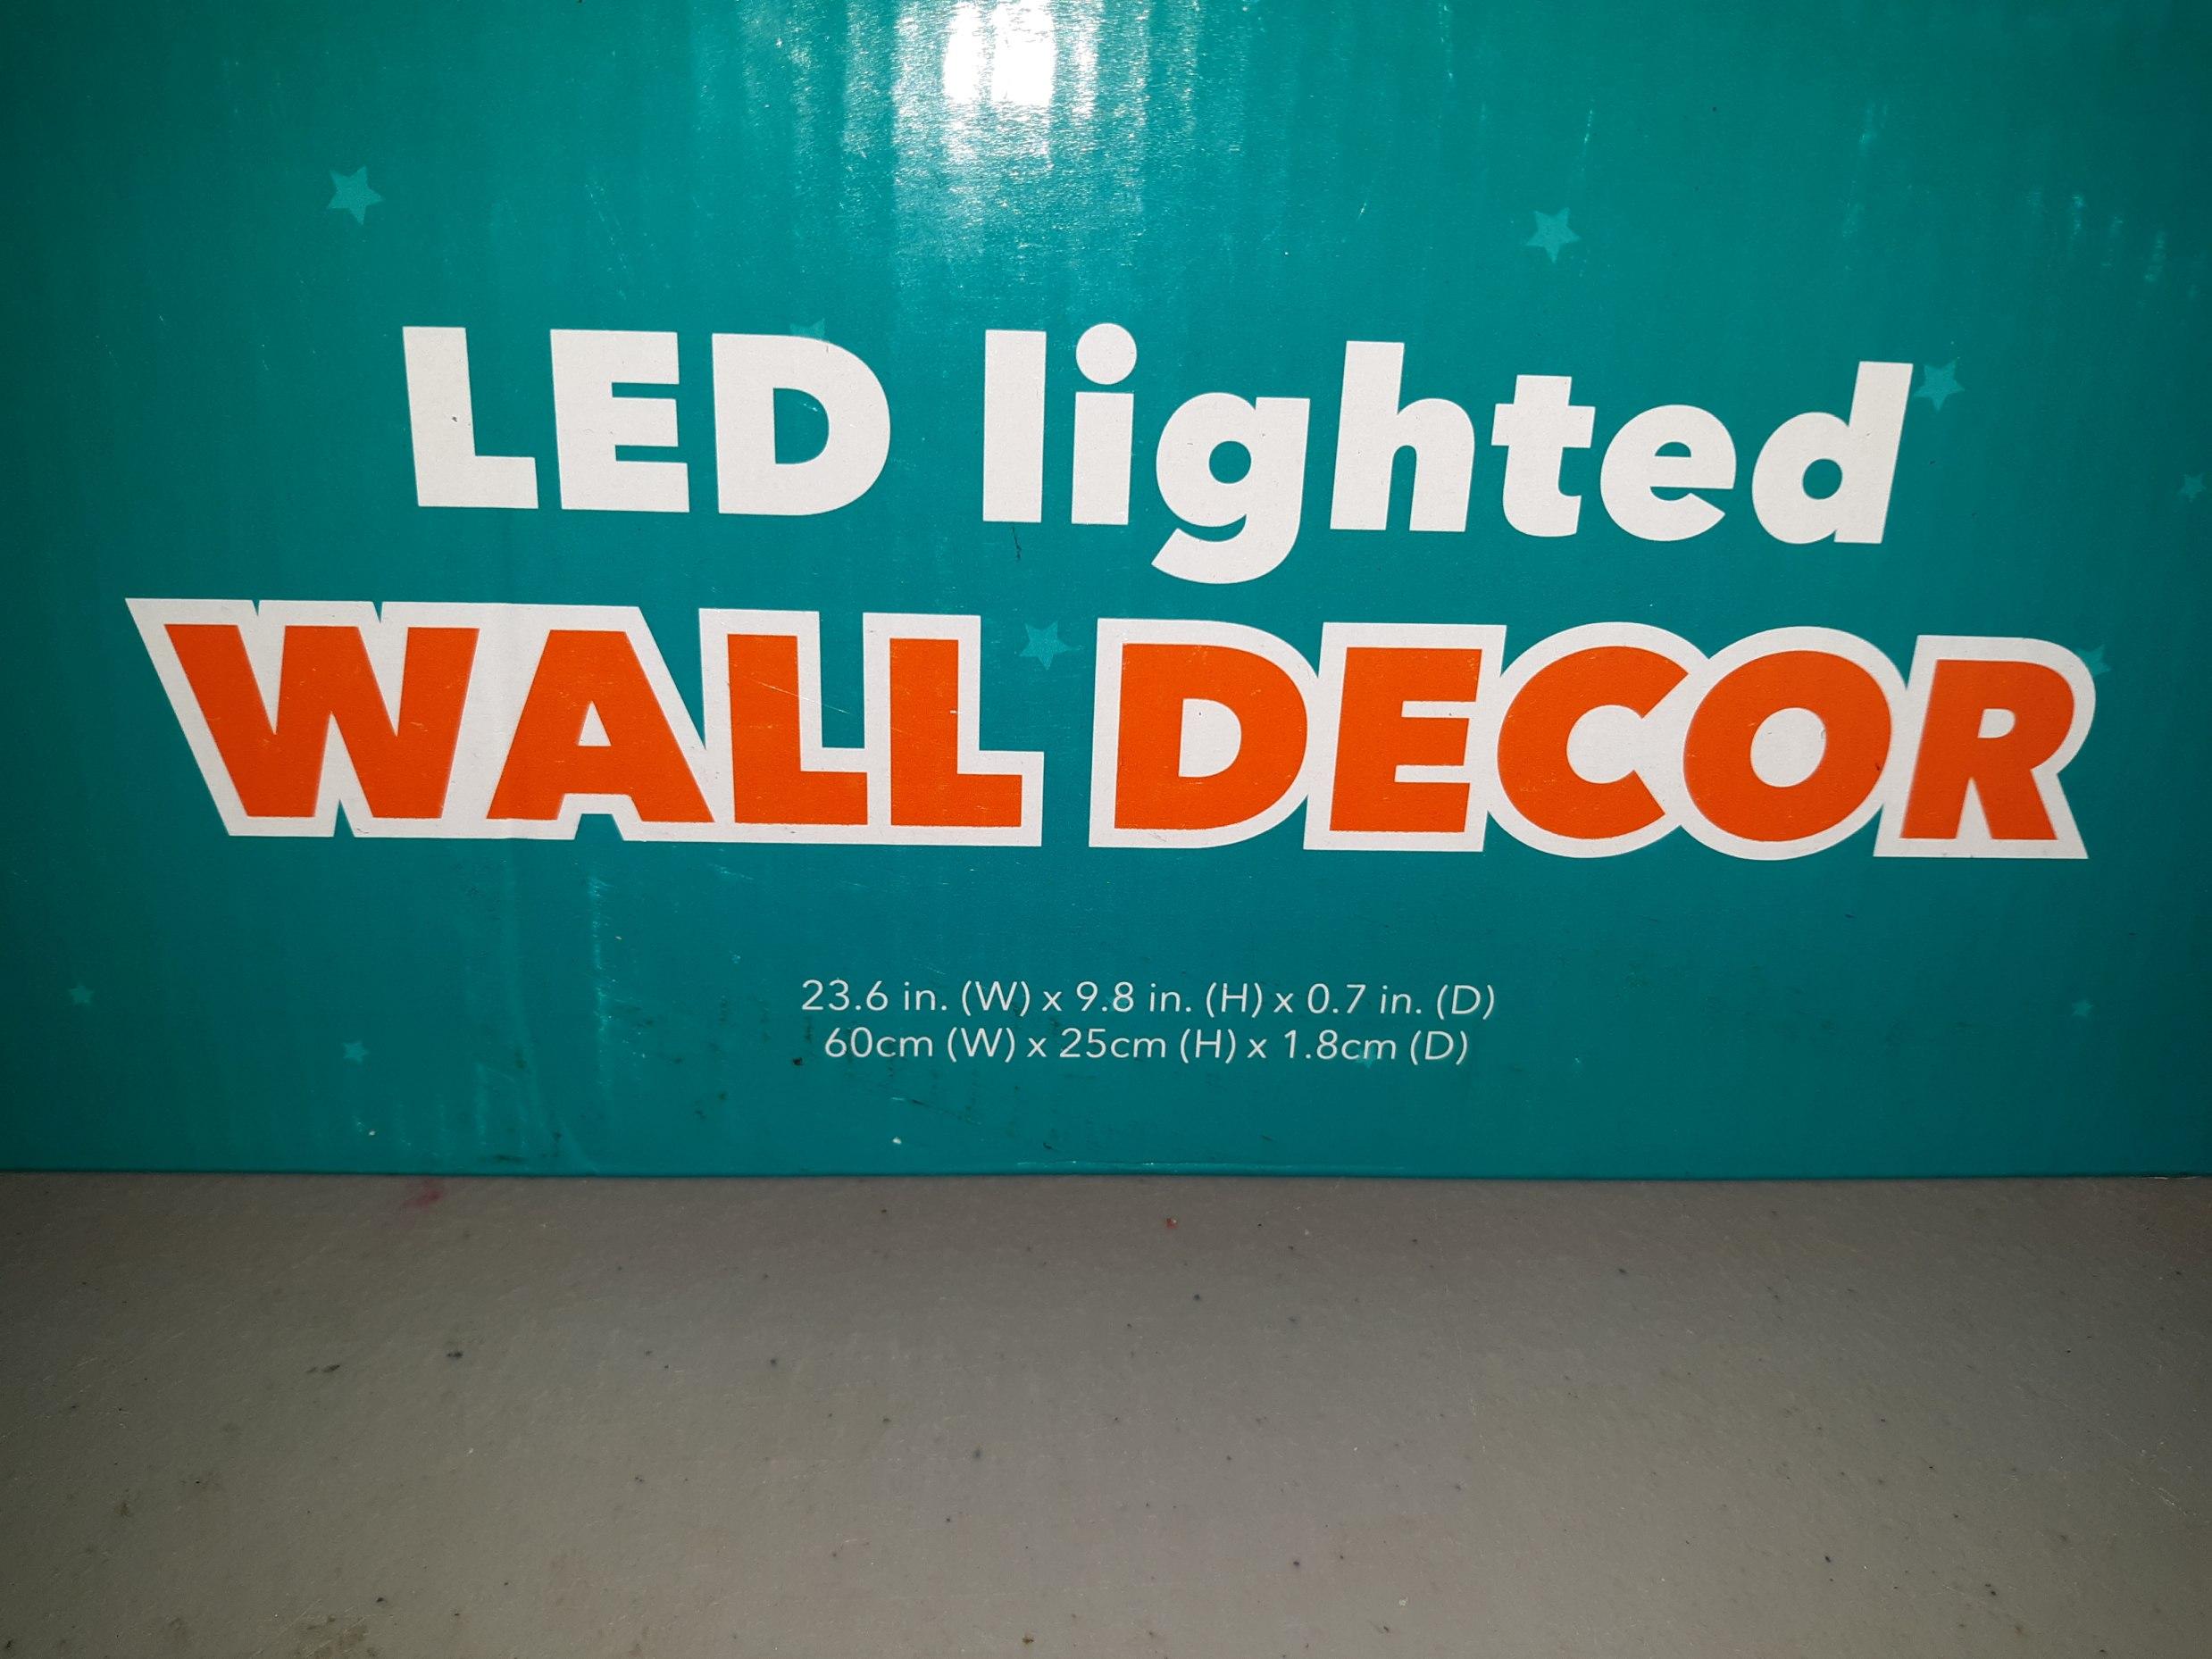 Dream Street LED Lighted Wall Décor, New